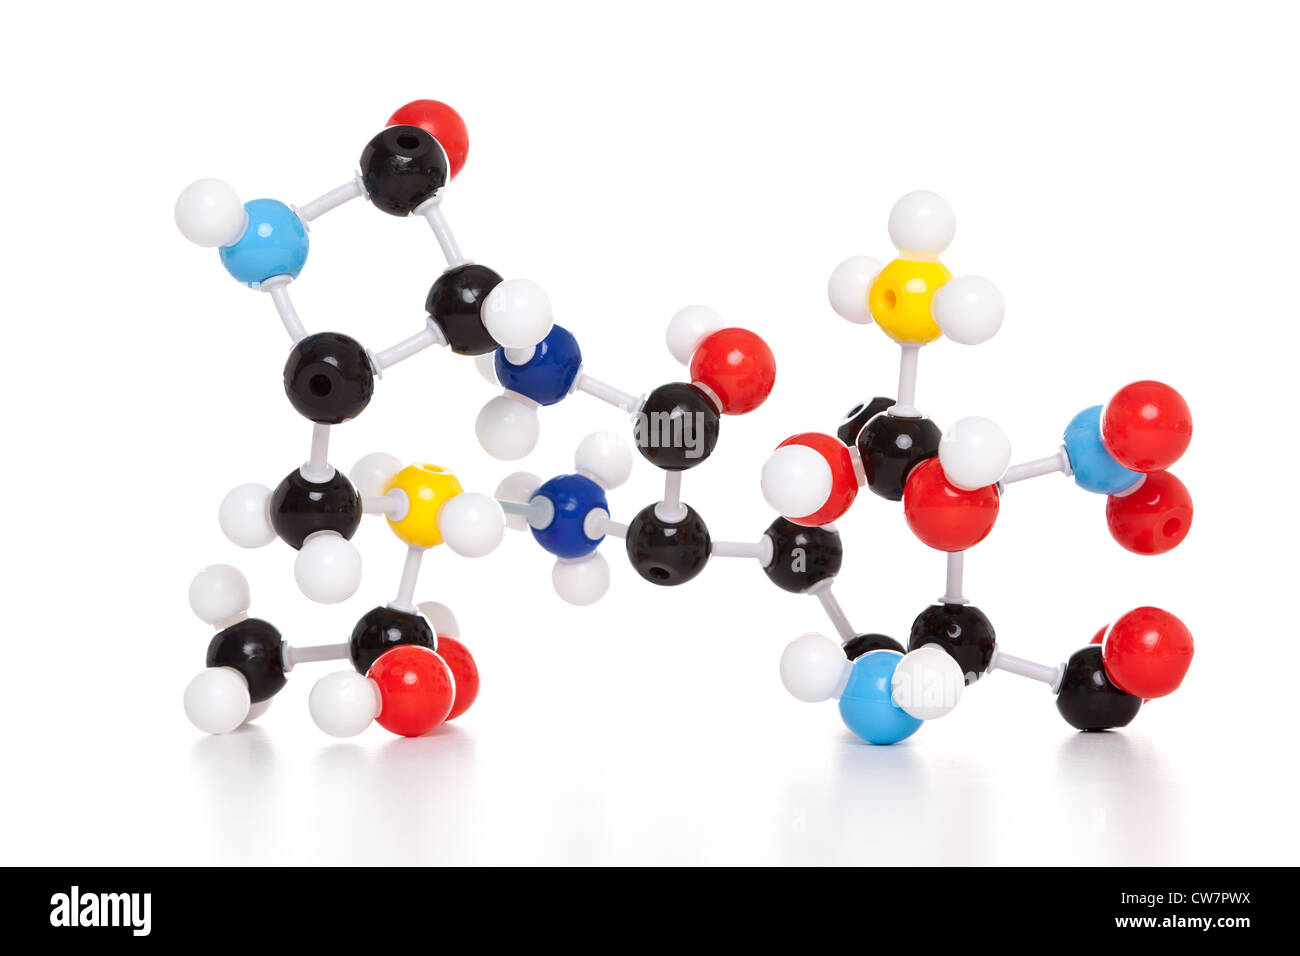 Foto de un modelo de átomo molecular aislado sobre un fondo blanco. Foto de stock